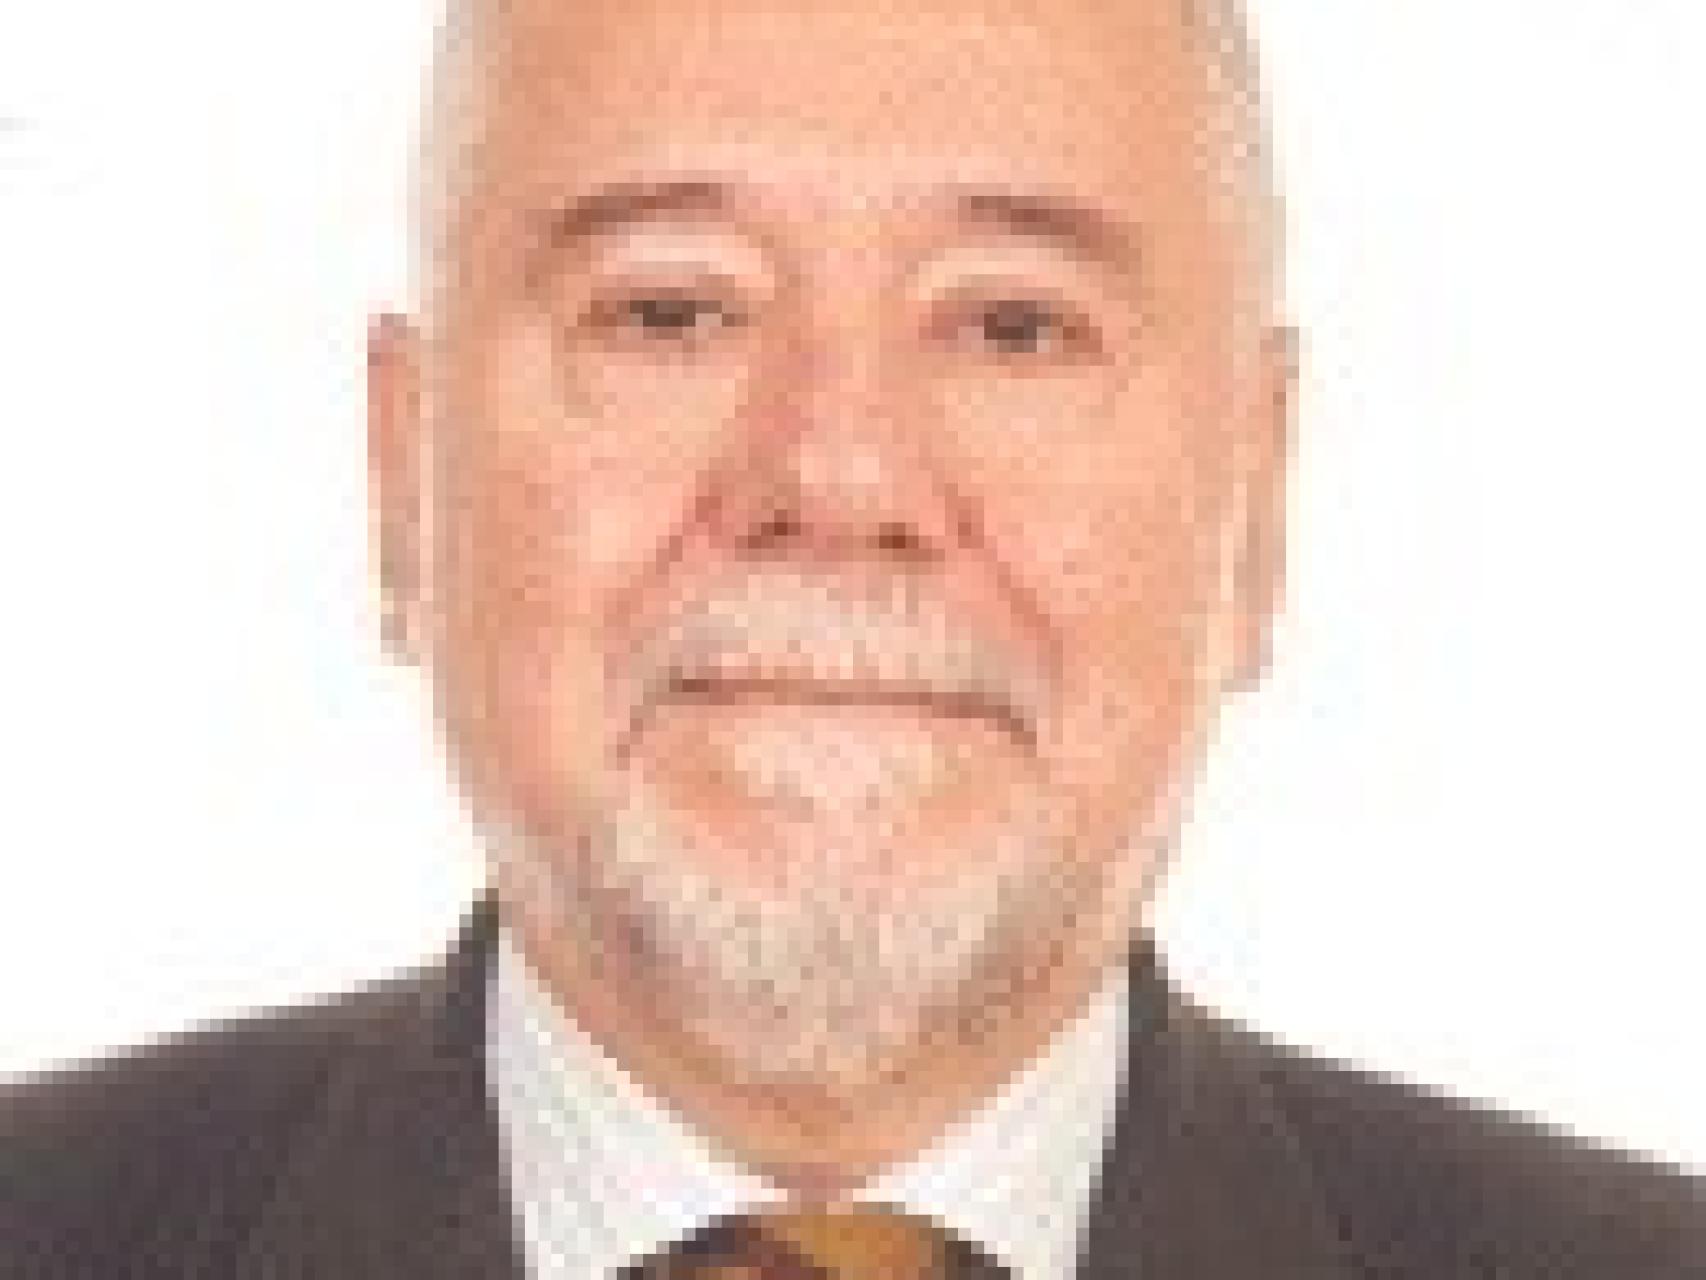 El vicepresidente del consejo por el PSOE, Francisco Rodríguez Martín